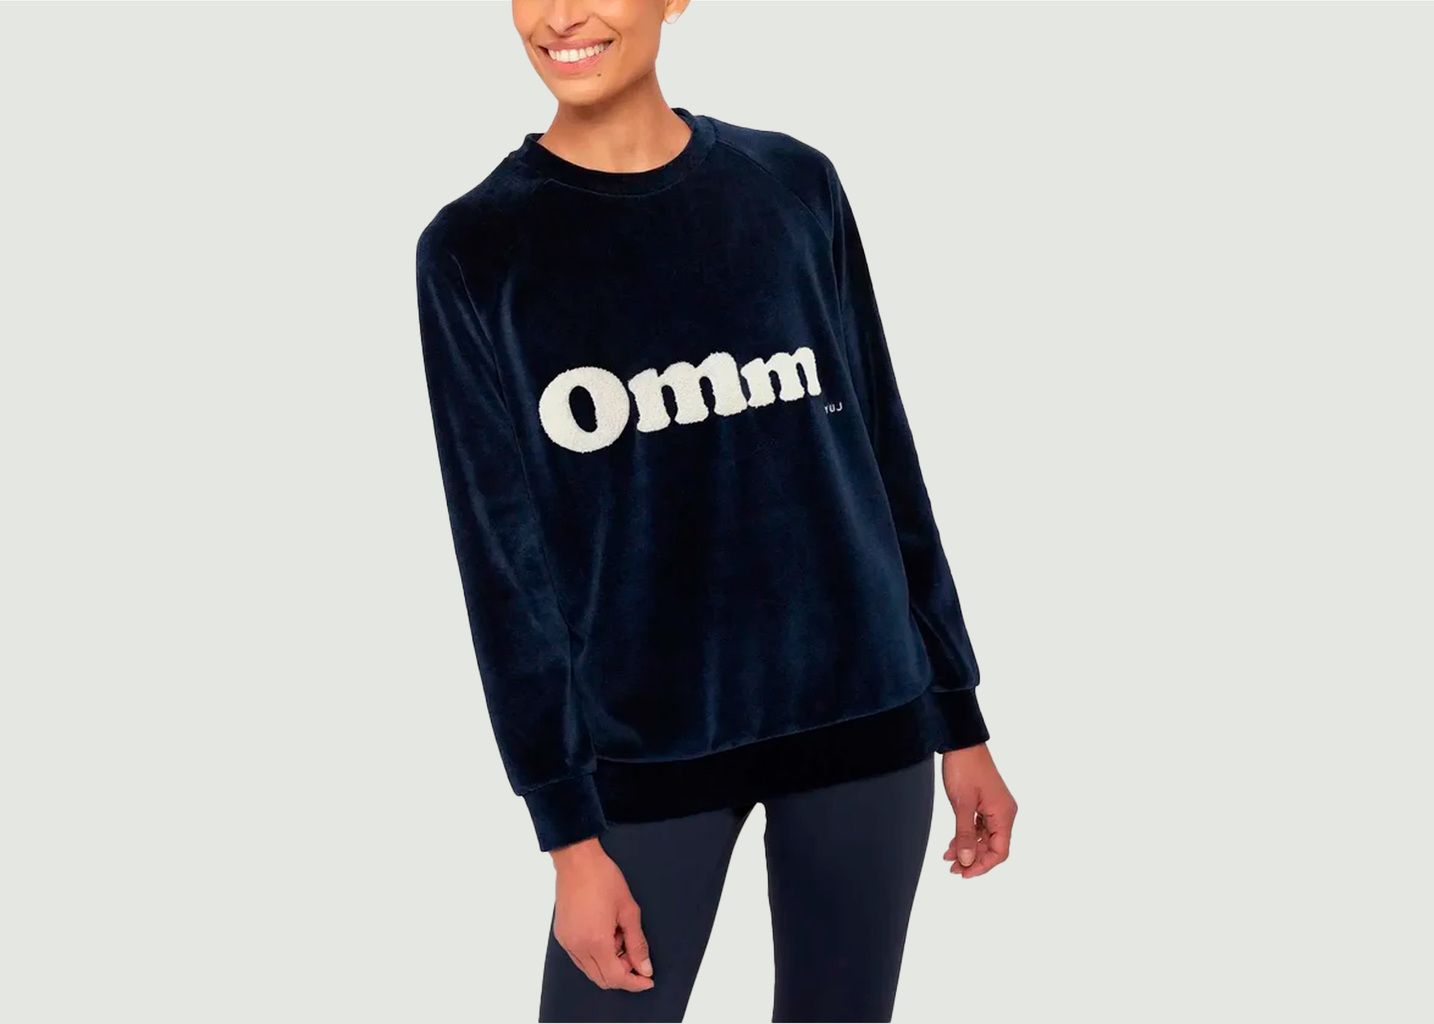 OMM Sweater - YUJ Paris